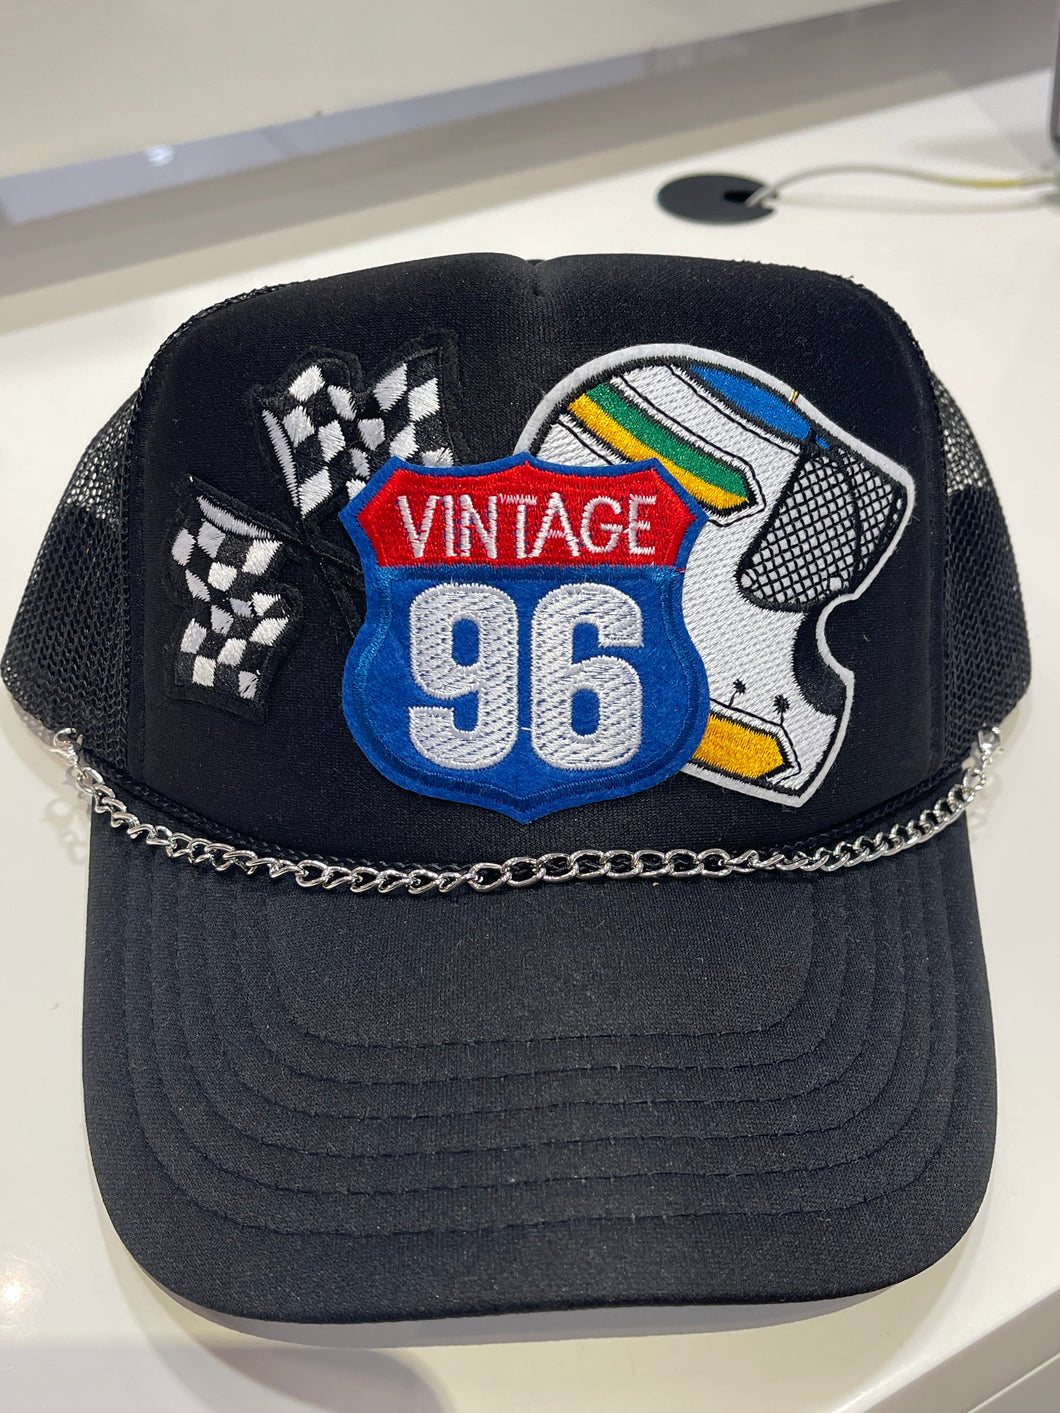 Vintage 96 Trucker Hat